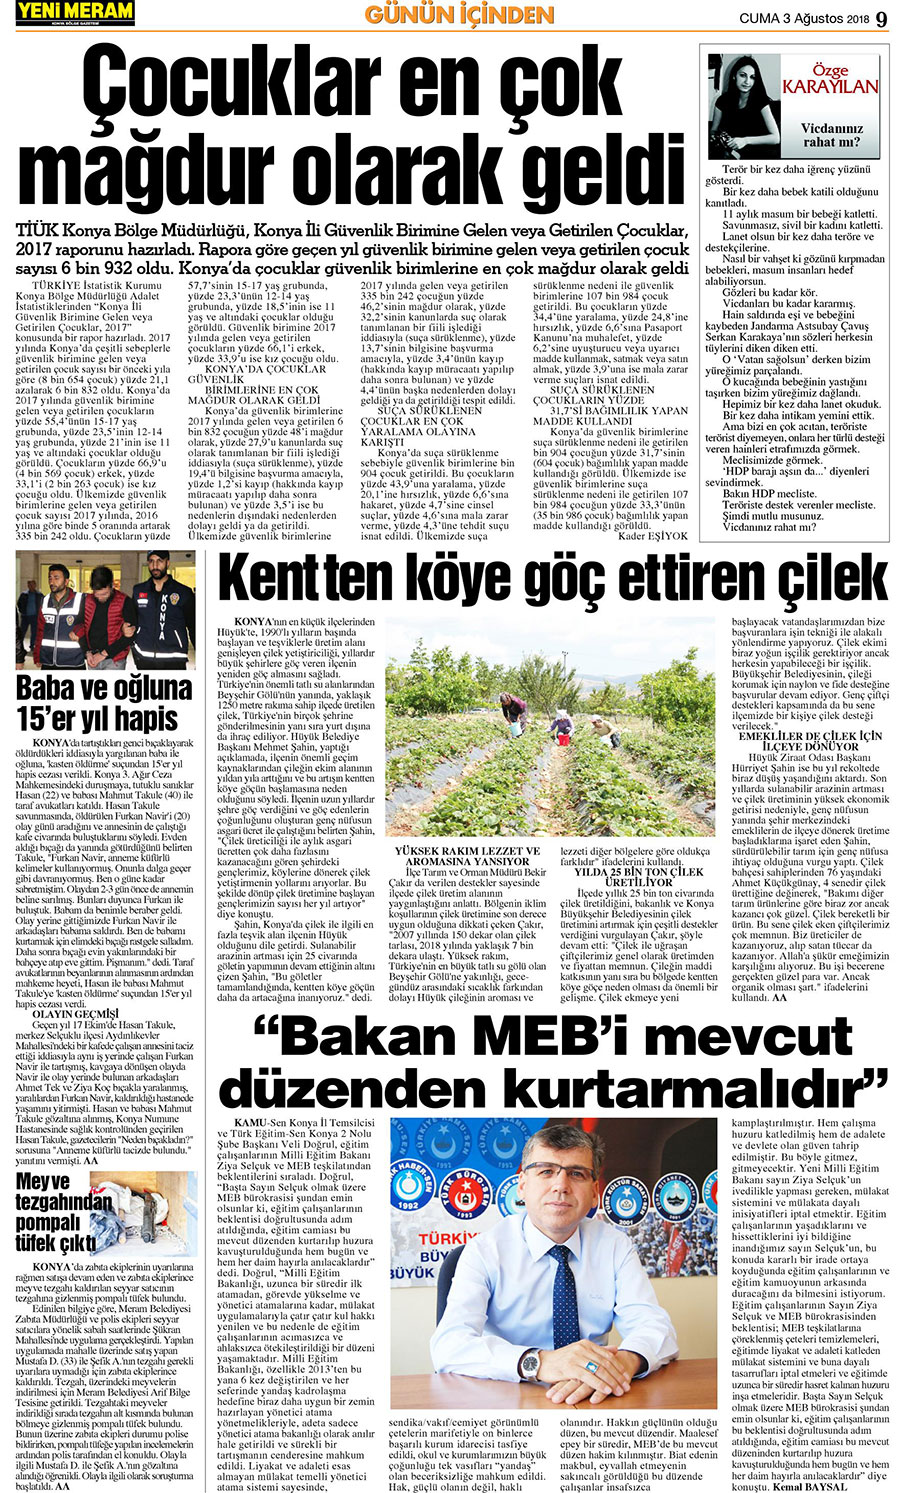 3 Ağustos 2018 Yeni Meram Gazetesi